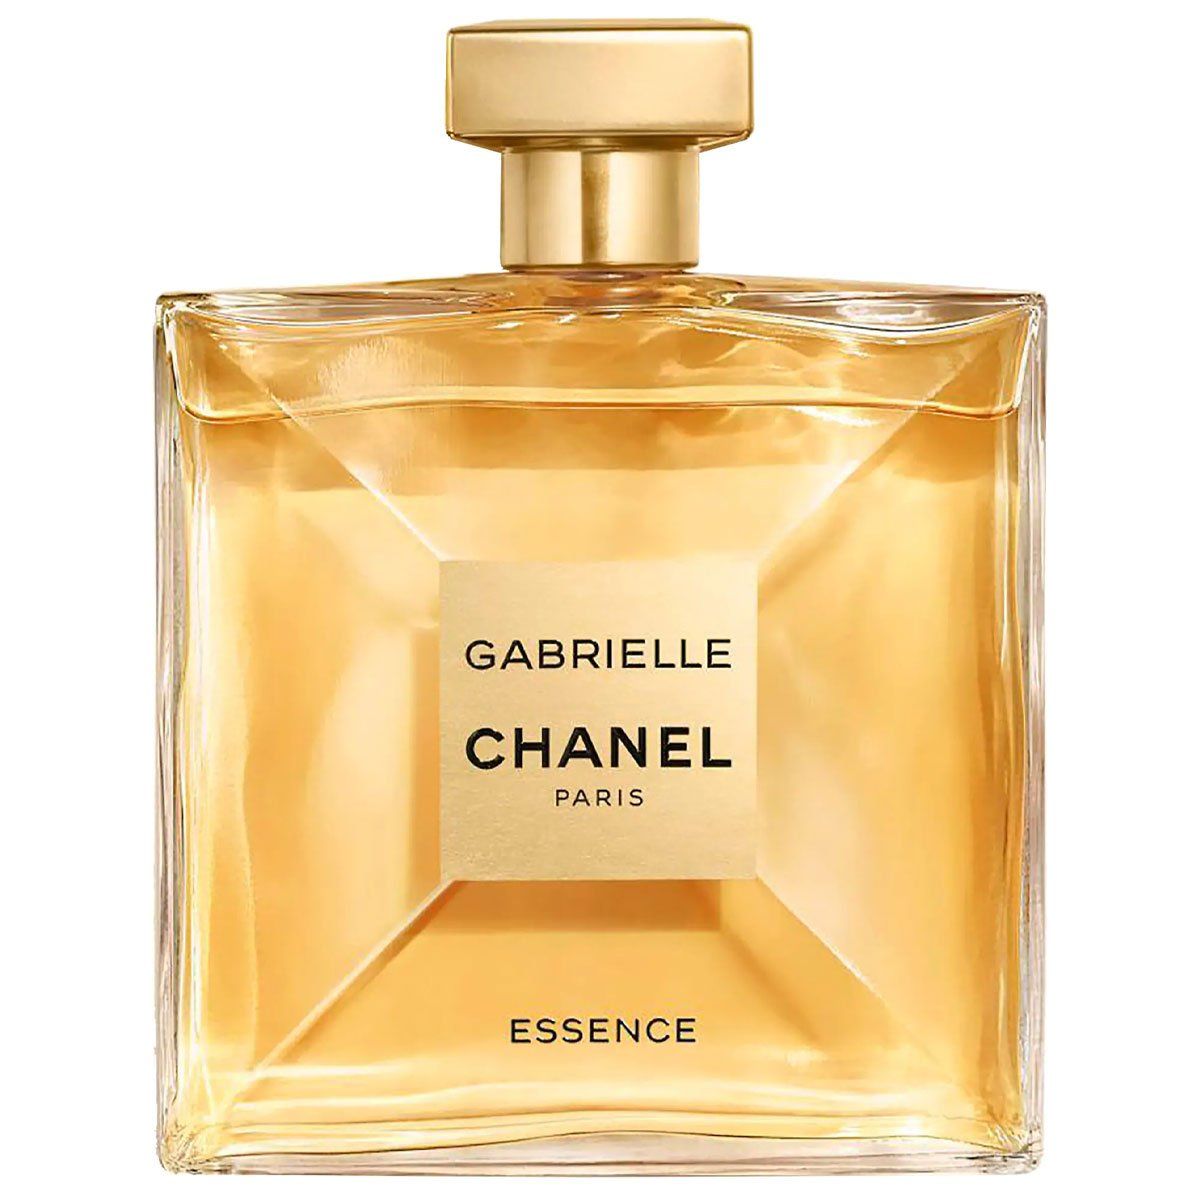  Chanel Gabrielle Essence Eau de Parfum 